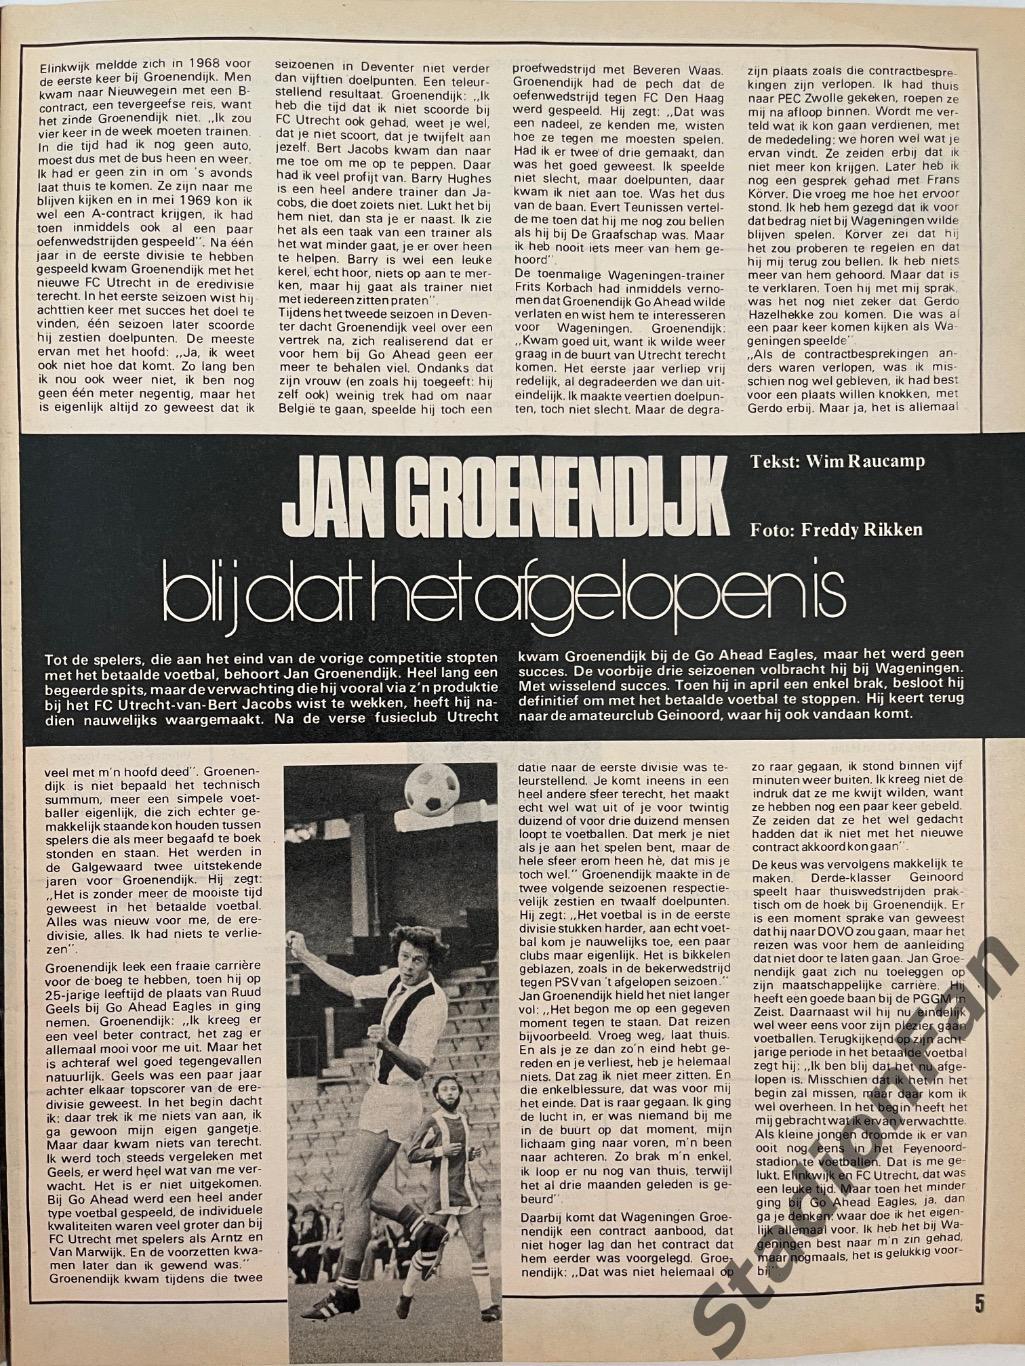 Журнал Voetbal nr.27 - 1977 год. 3